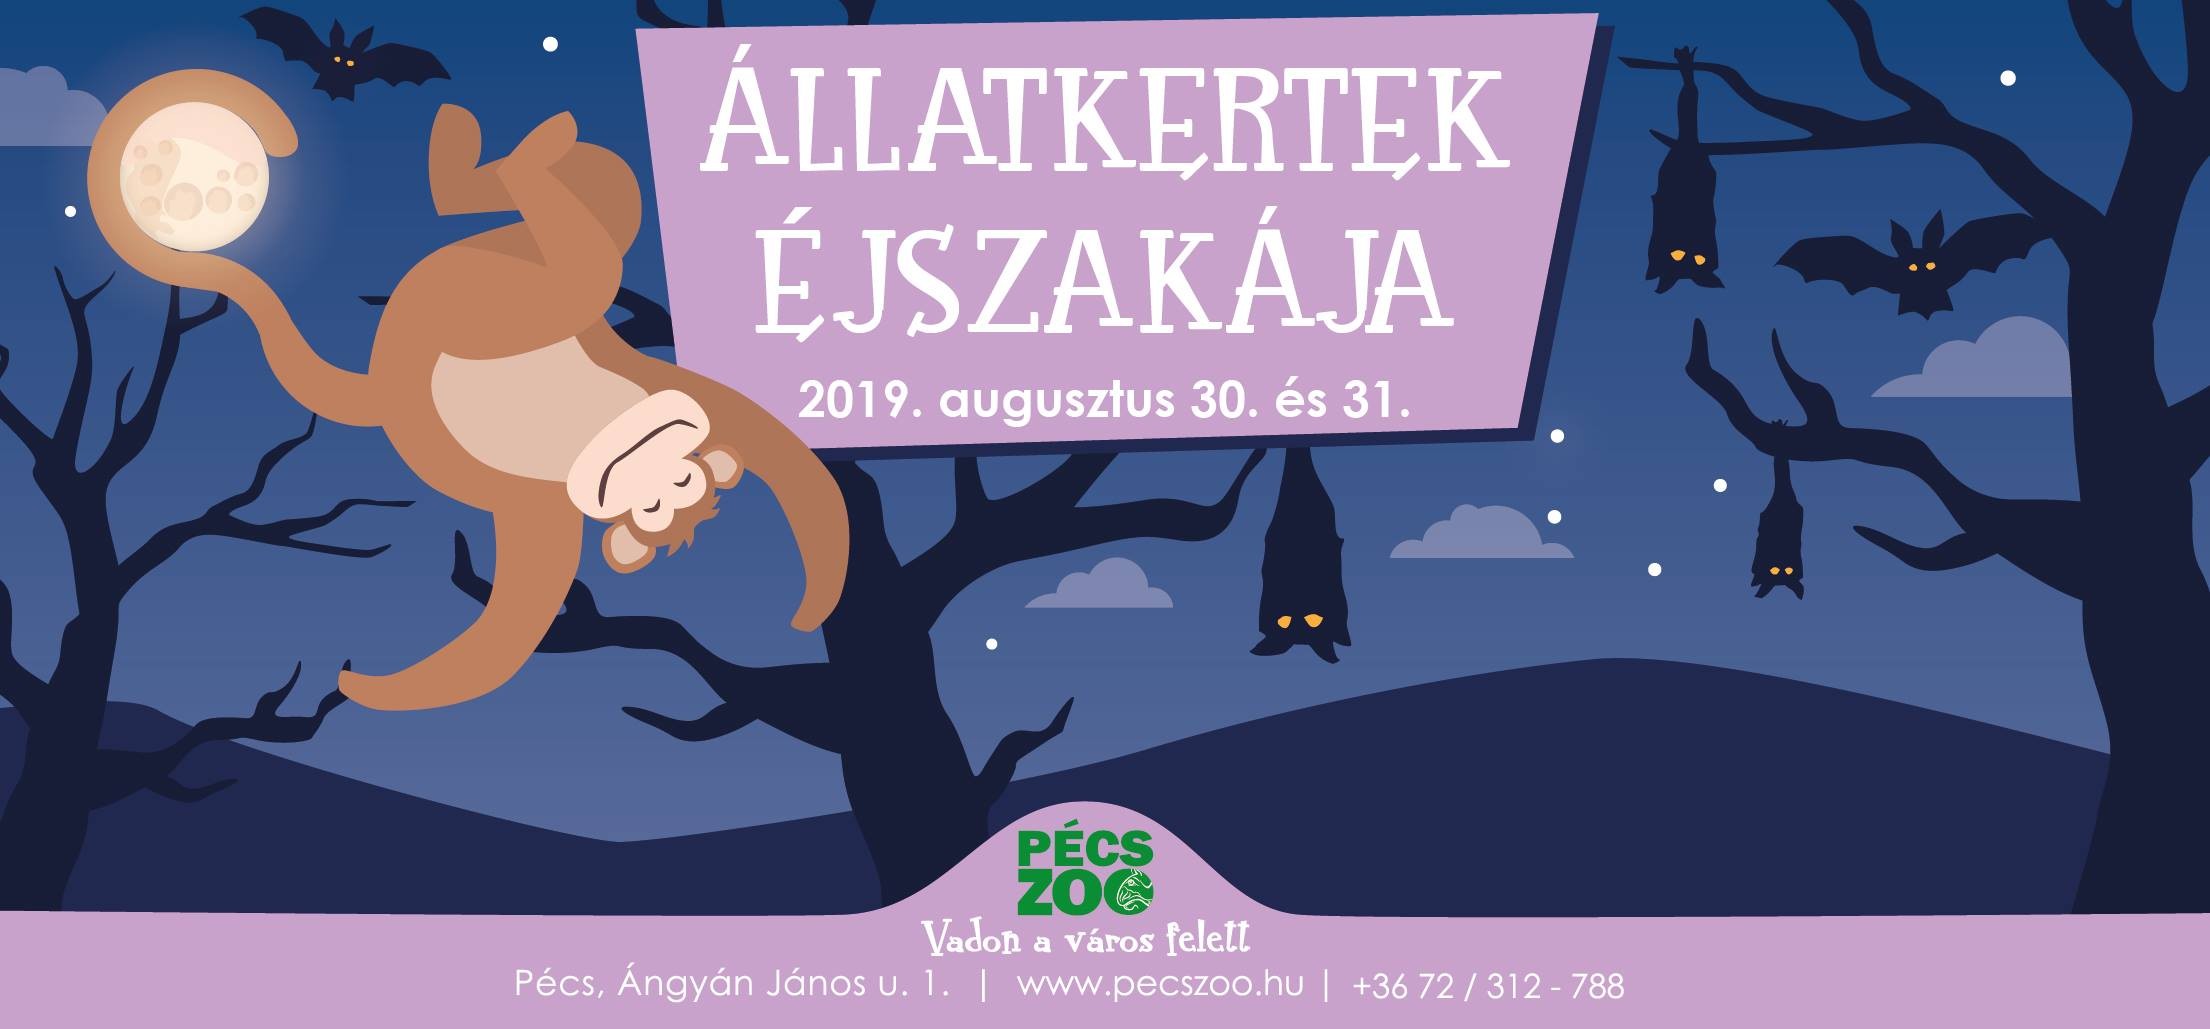 Állatkertek éjszakája - Pécsen két estén át is várják a látogatókat